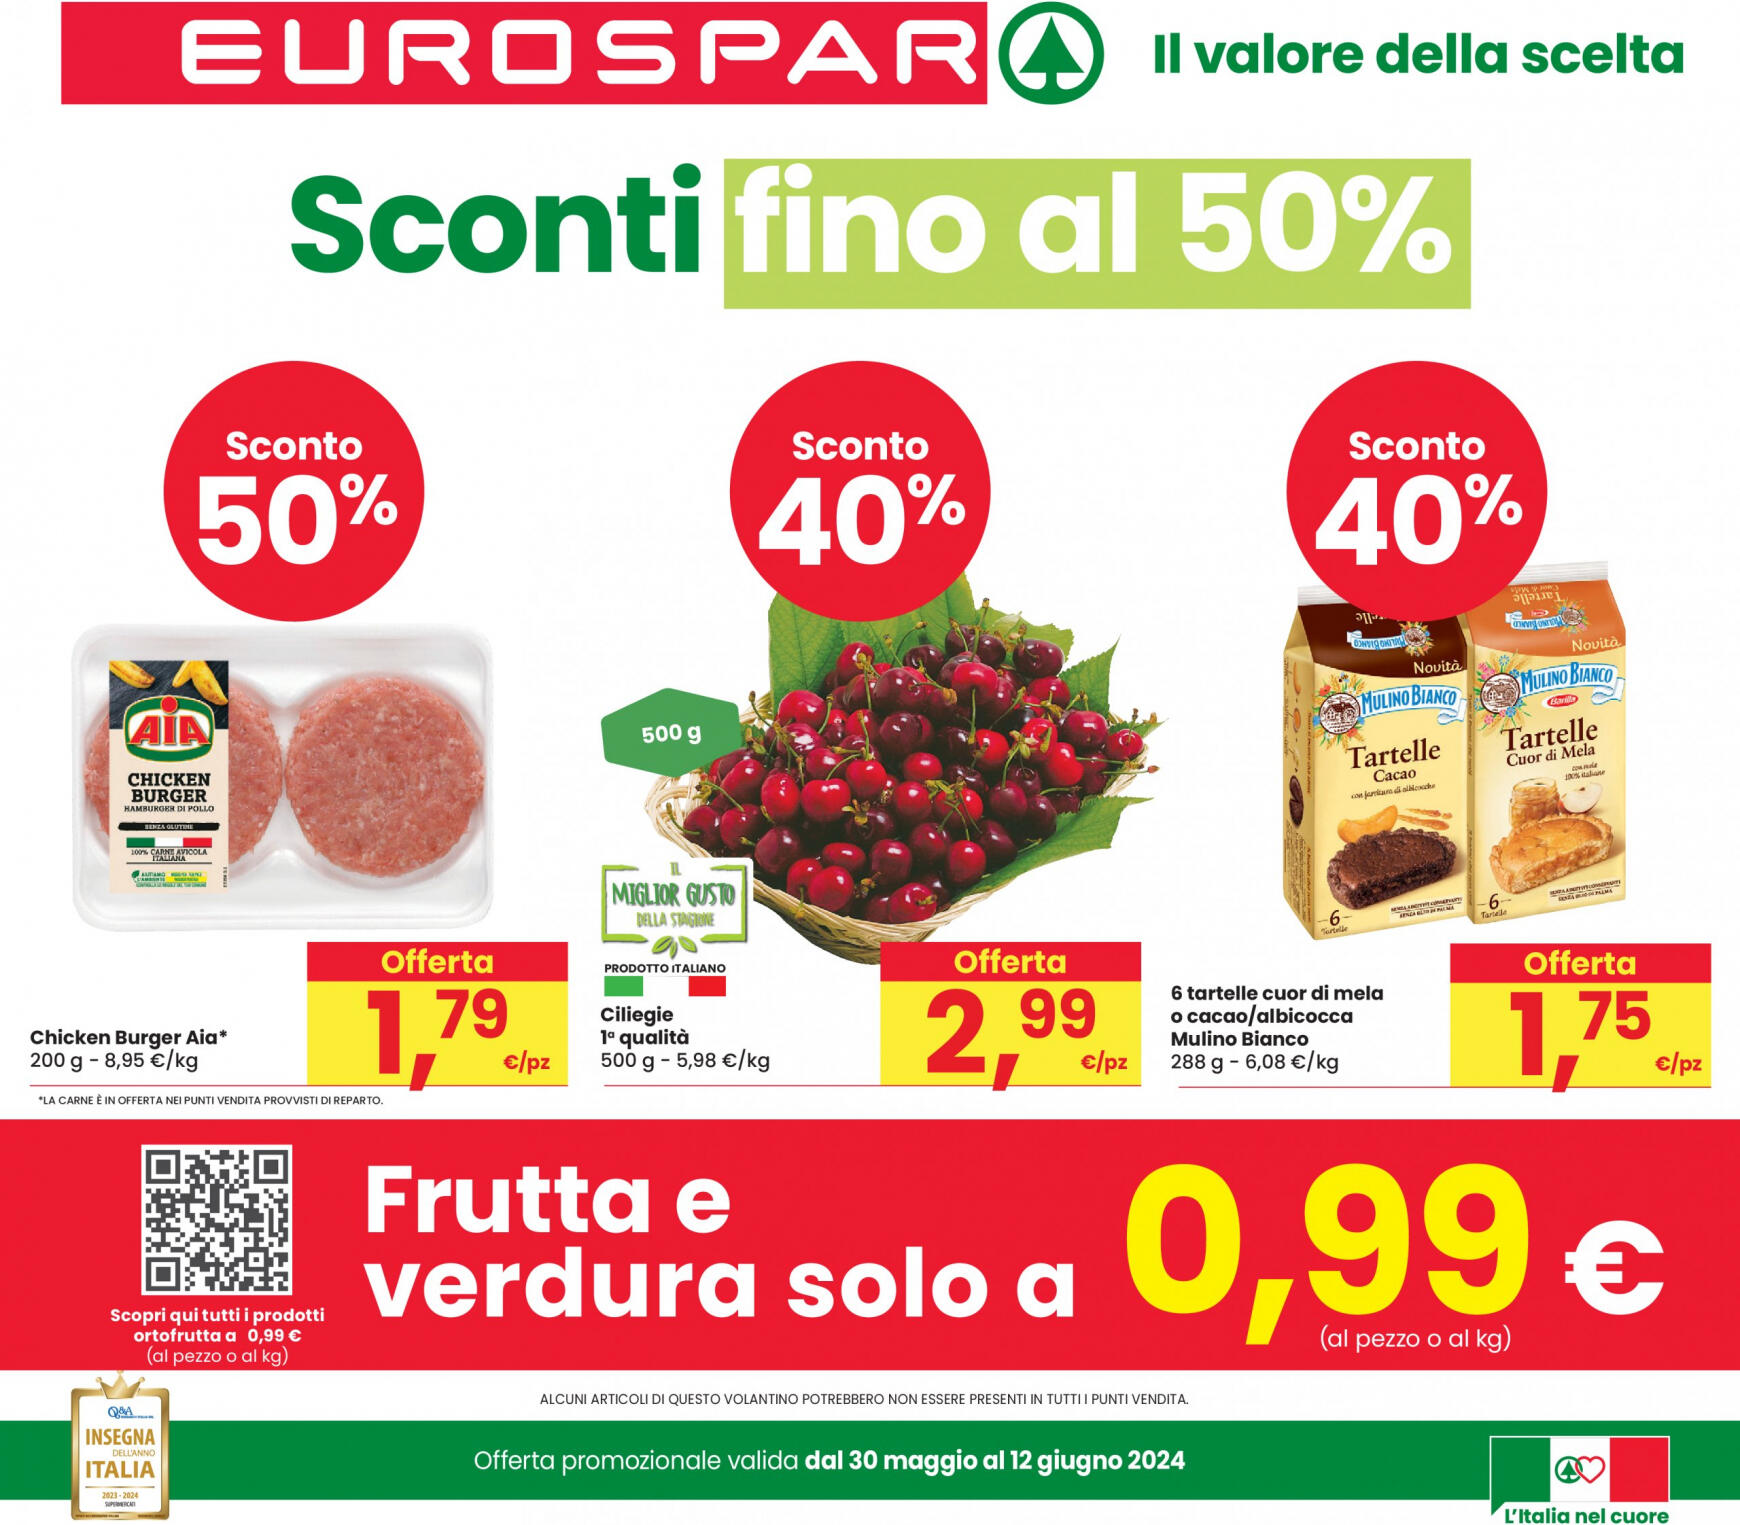 eurospar - Nuovo volantino Eurospar 30.05. - 12.06.